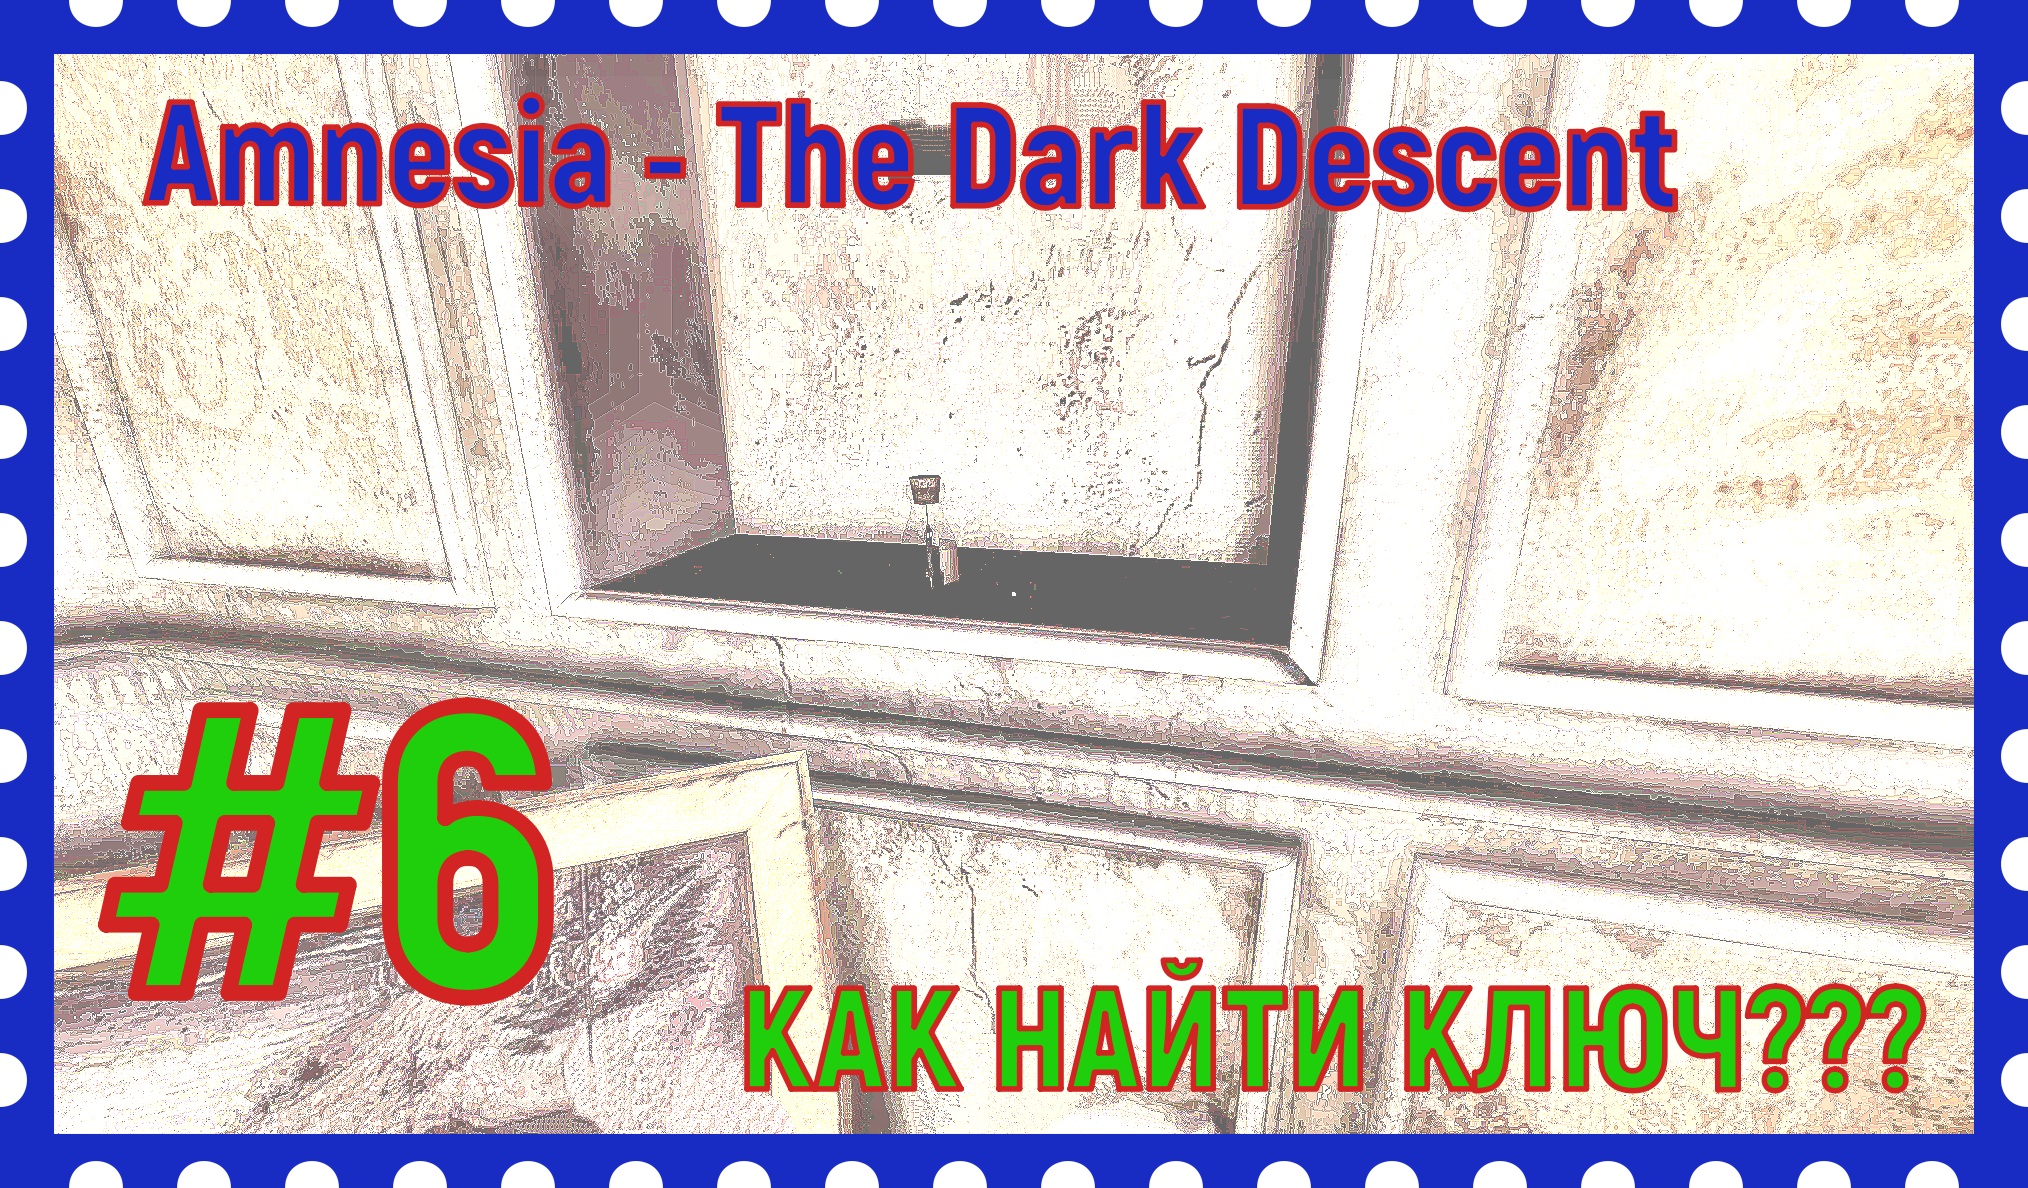 ПРОХОЖДЕНИЕ Amnesia - The Dark Descent/НАШЛИ КЛЮЧ/#6